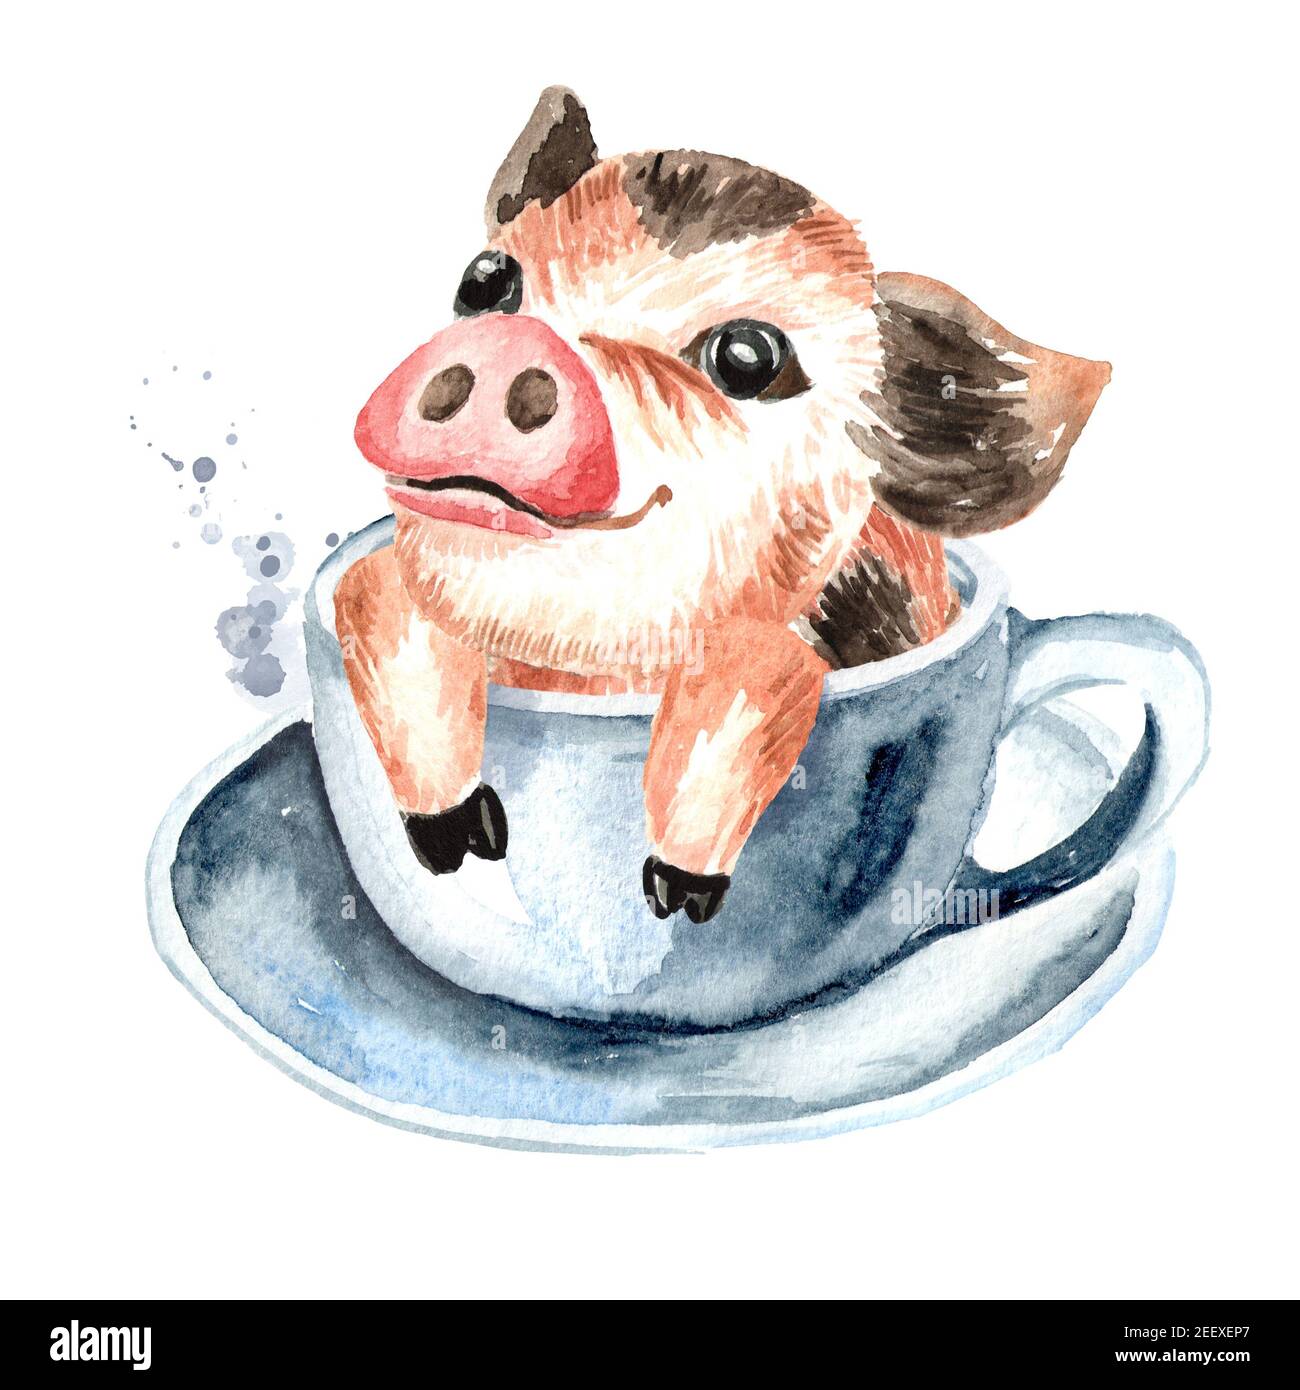 teacup pig desktop backgrounds